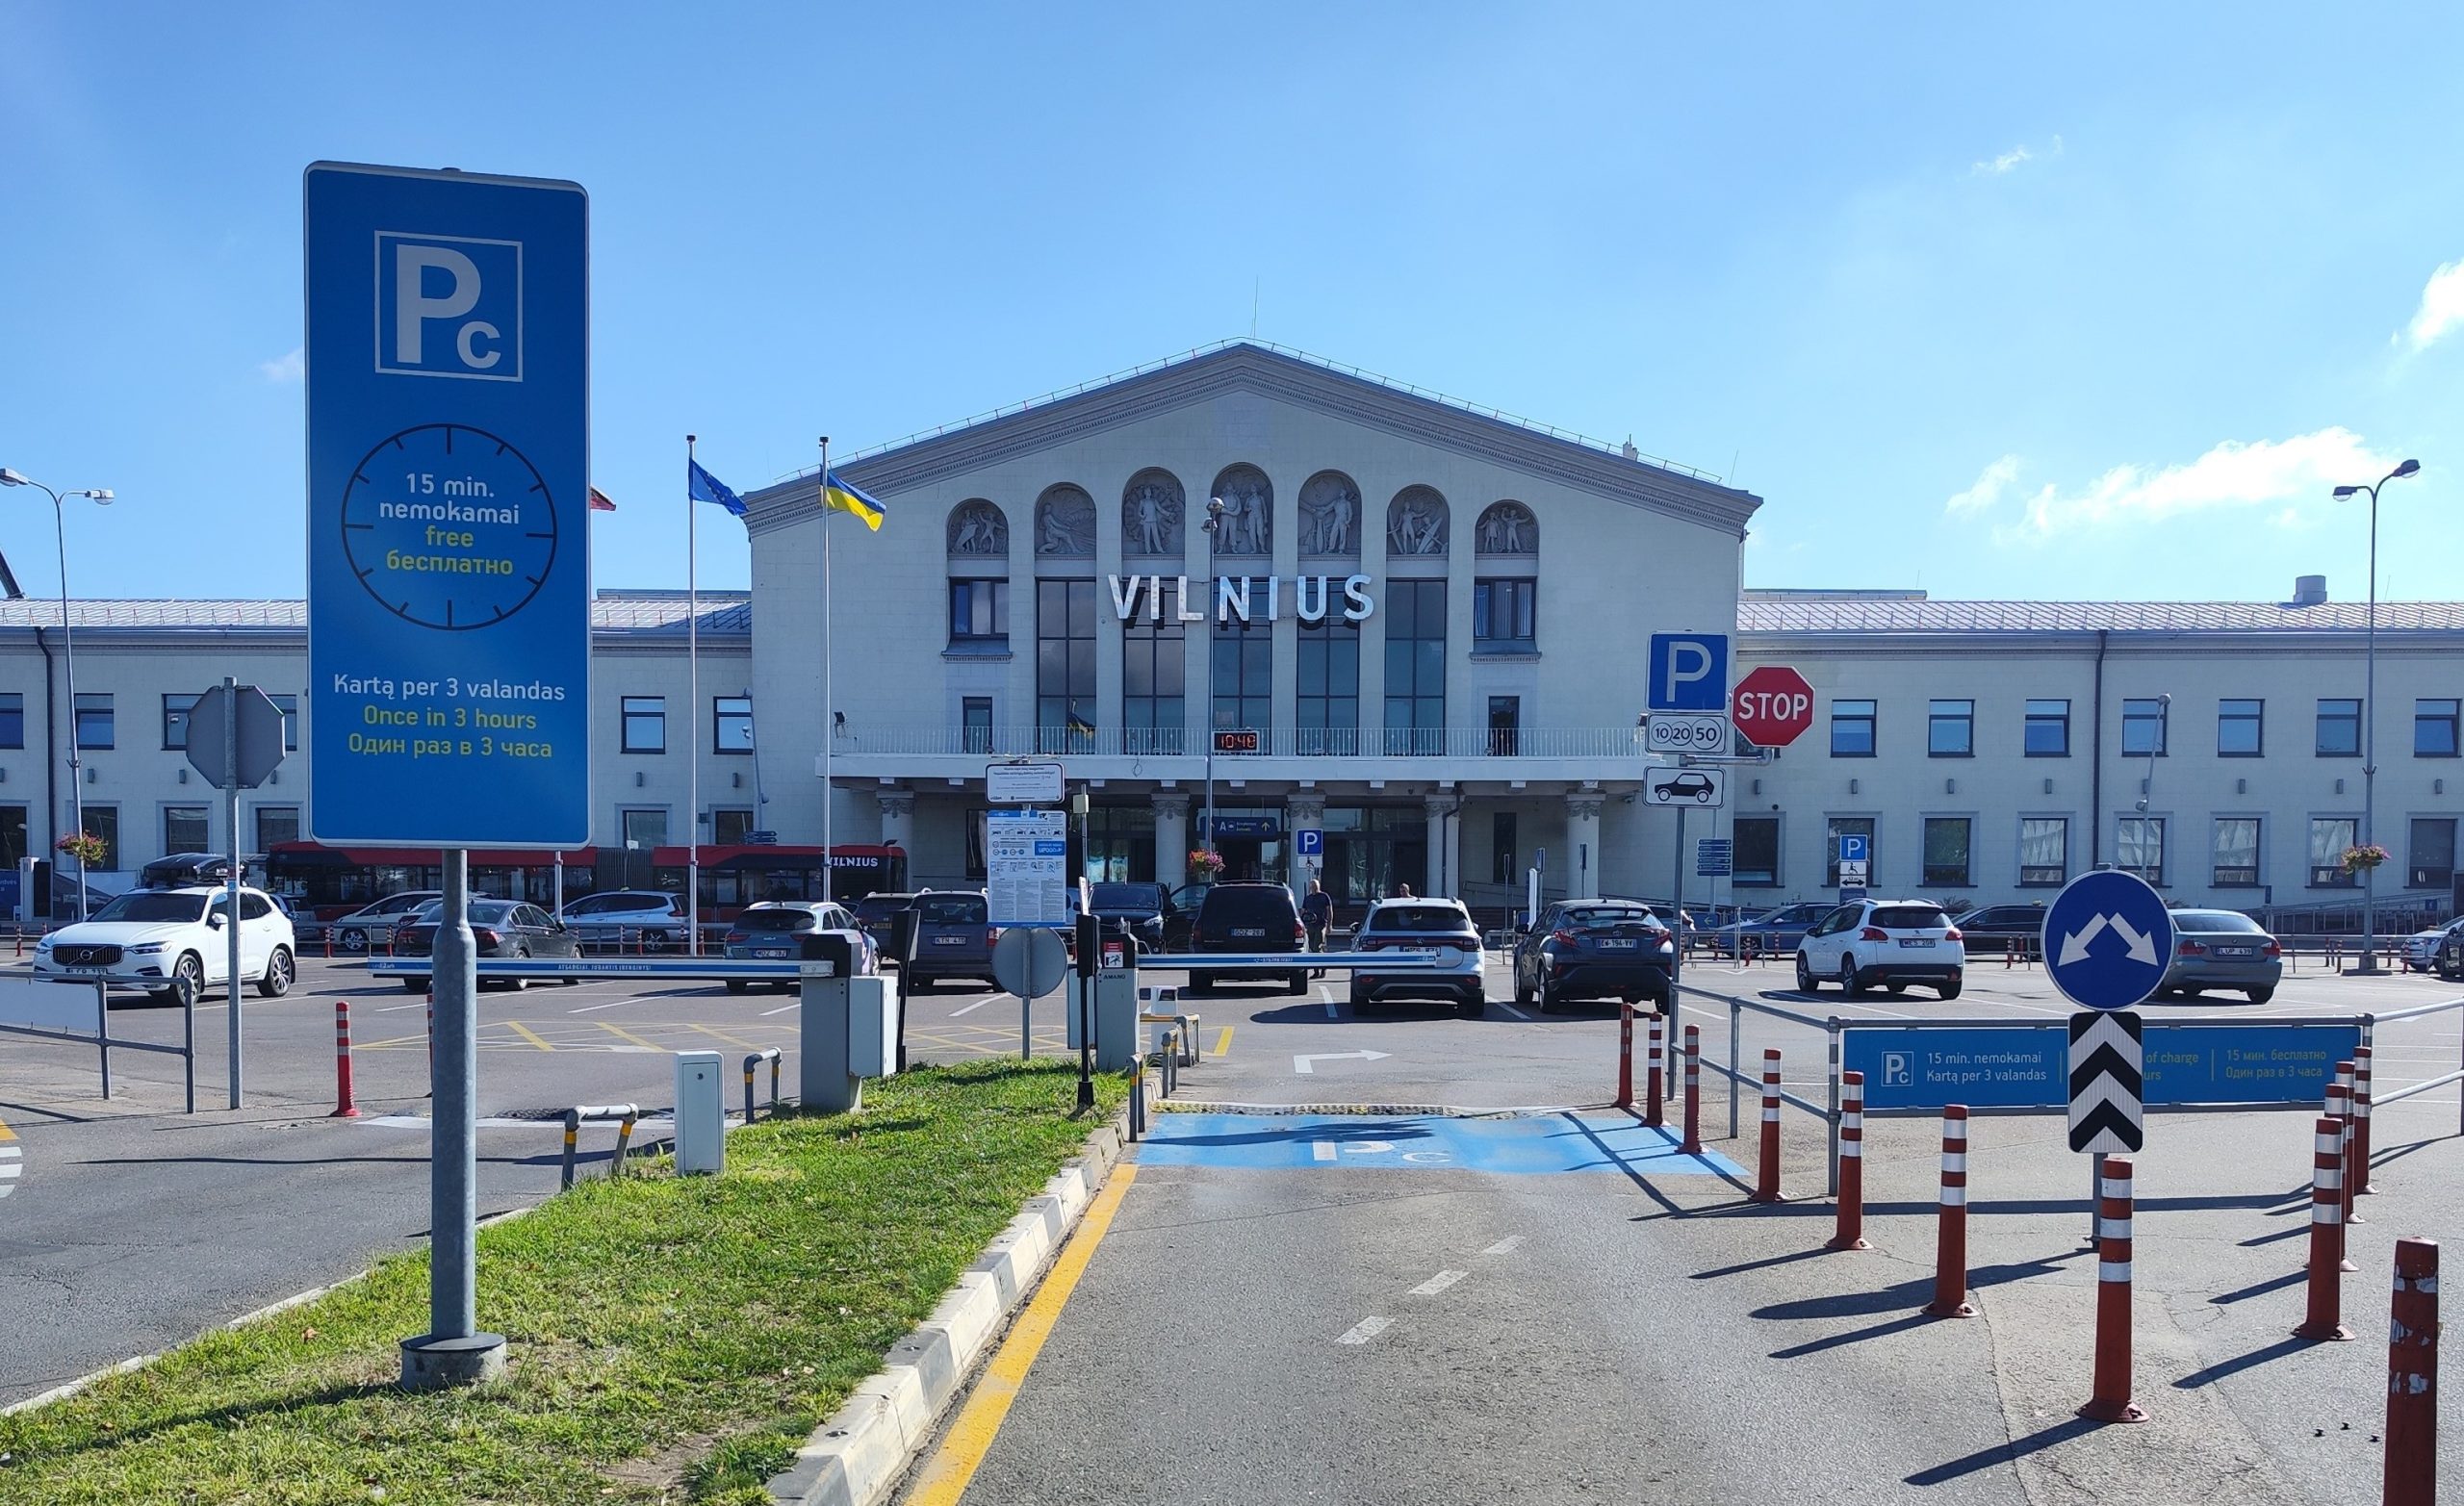 Parkavimas Vilniaus oro uoste (VNO) – PC uniPark aikštelė šalia terminalo